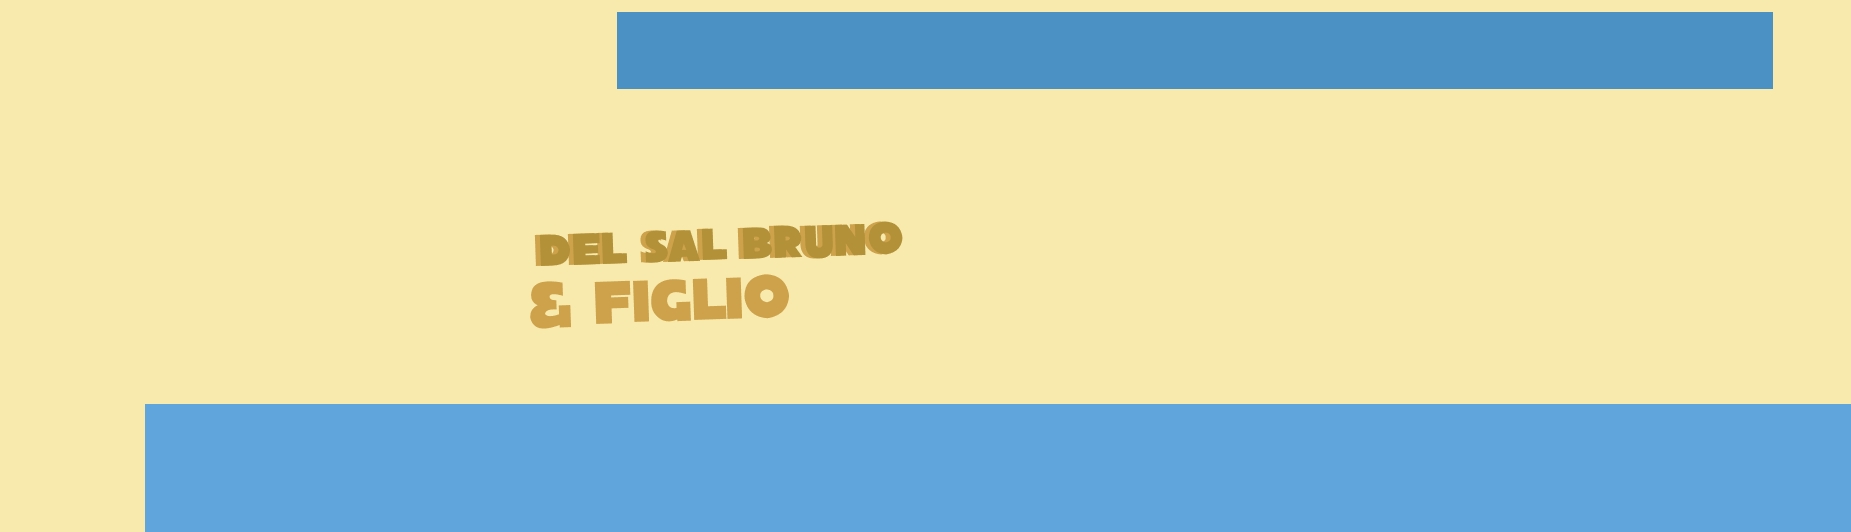 logo Del Sal Bruno & Figlio